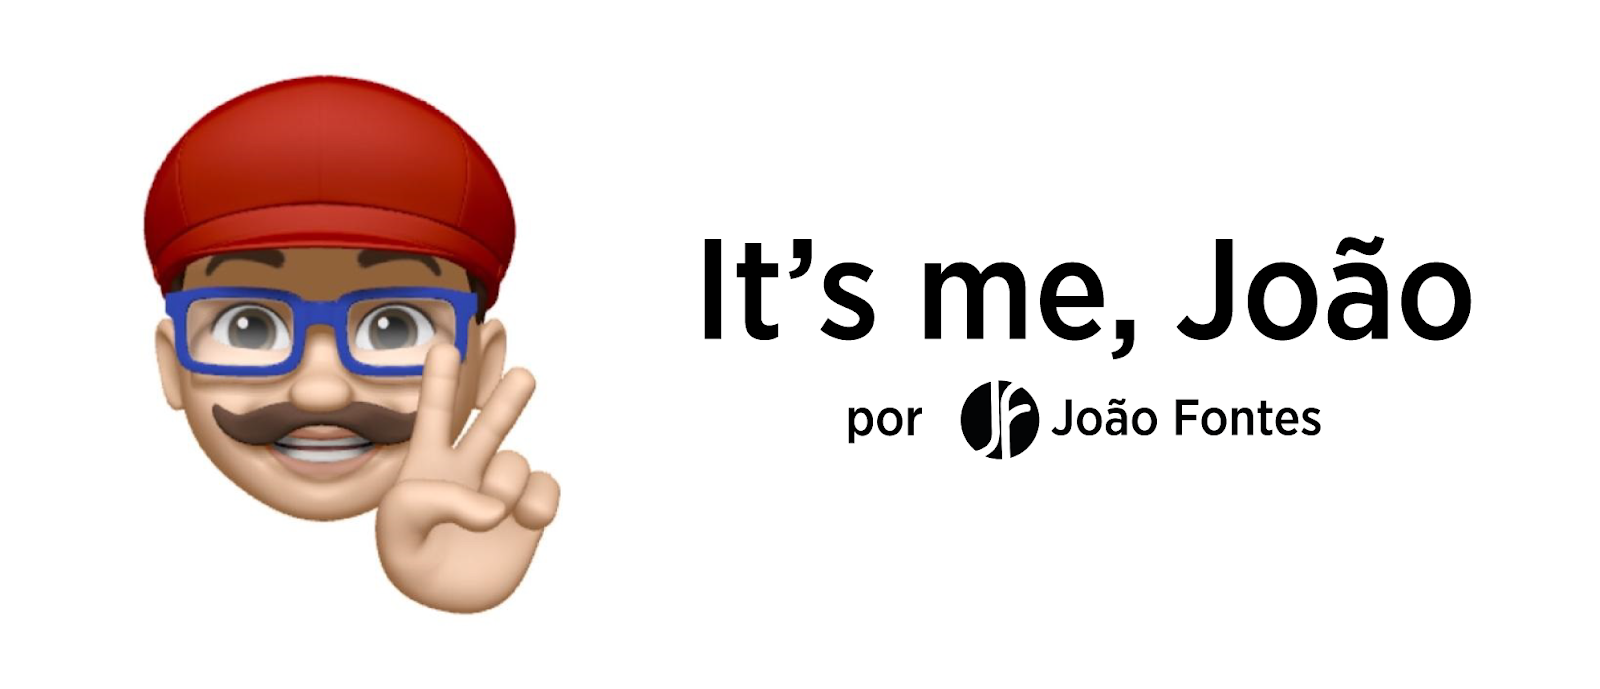 It's me, João